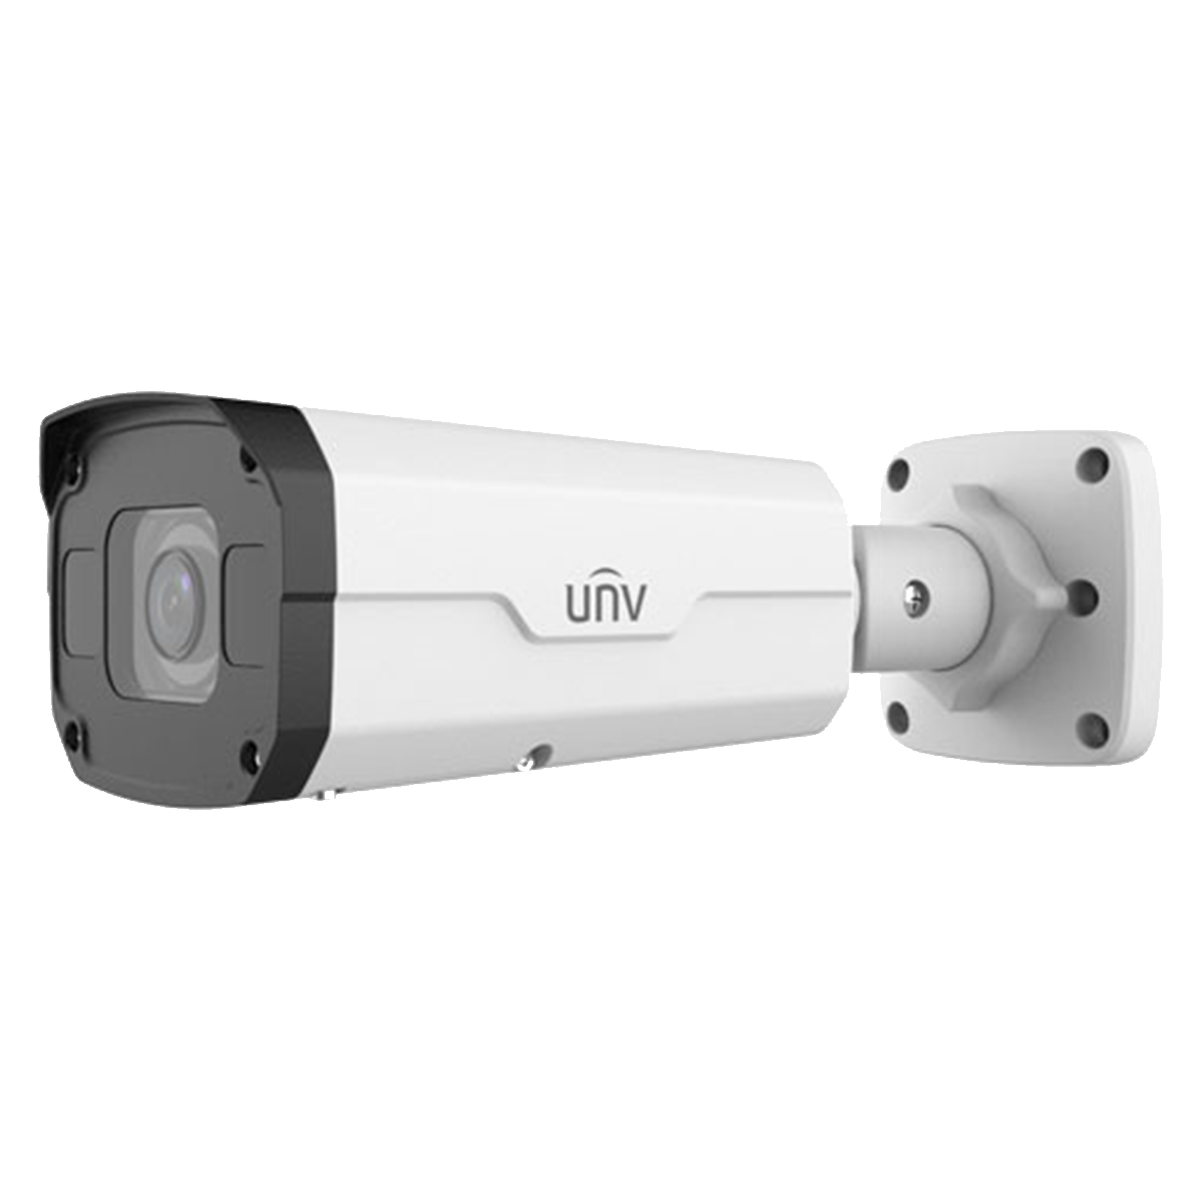 8MP HD LightHunter IR VF Bullet Network Camera